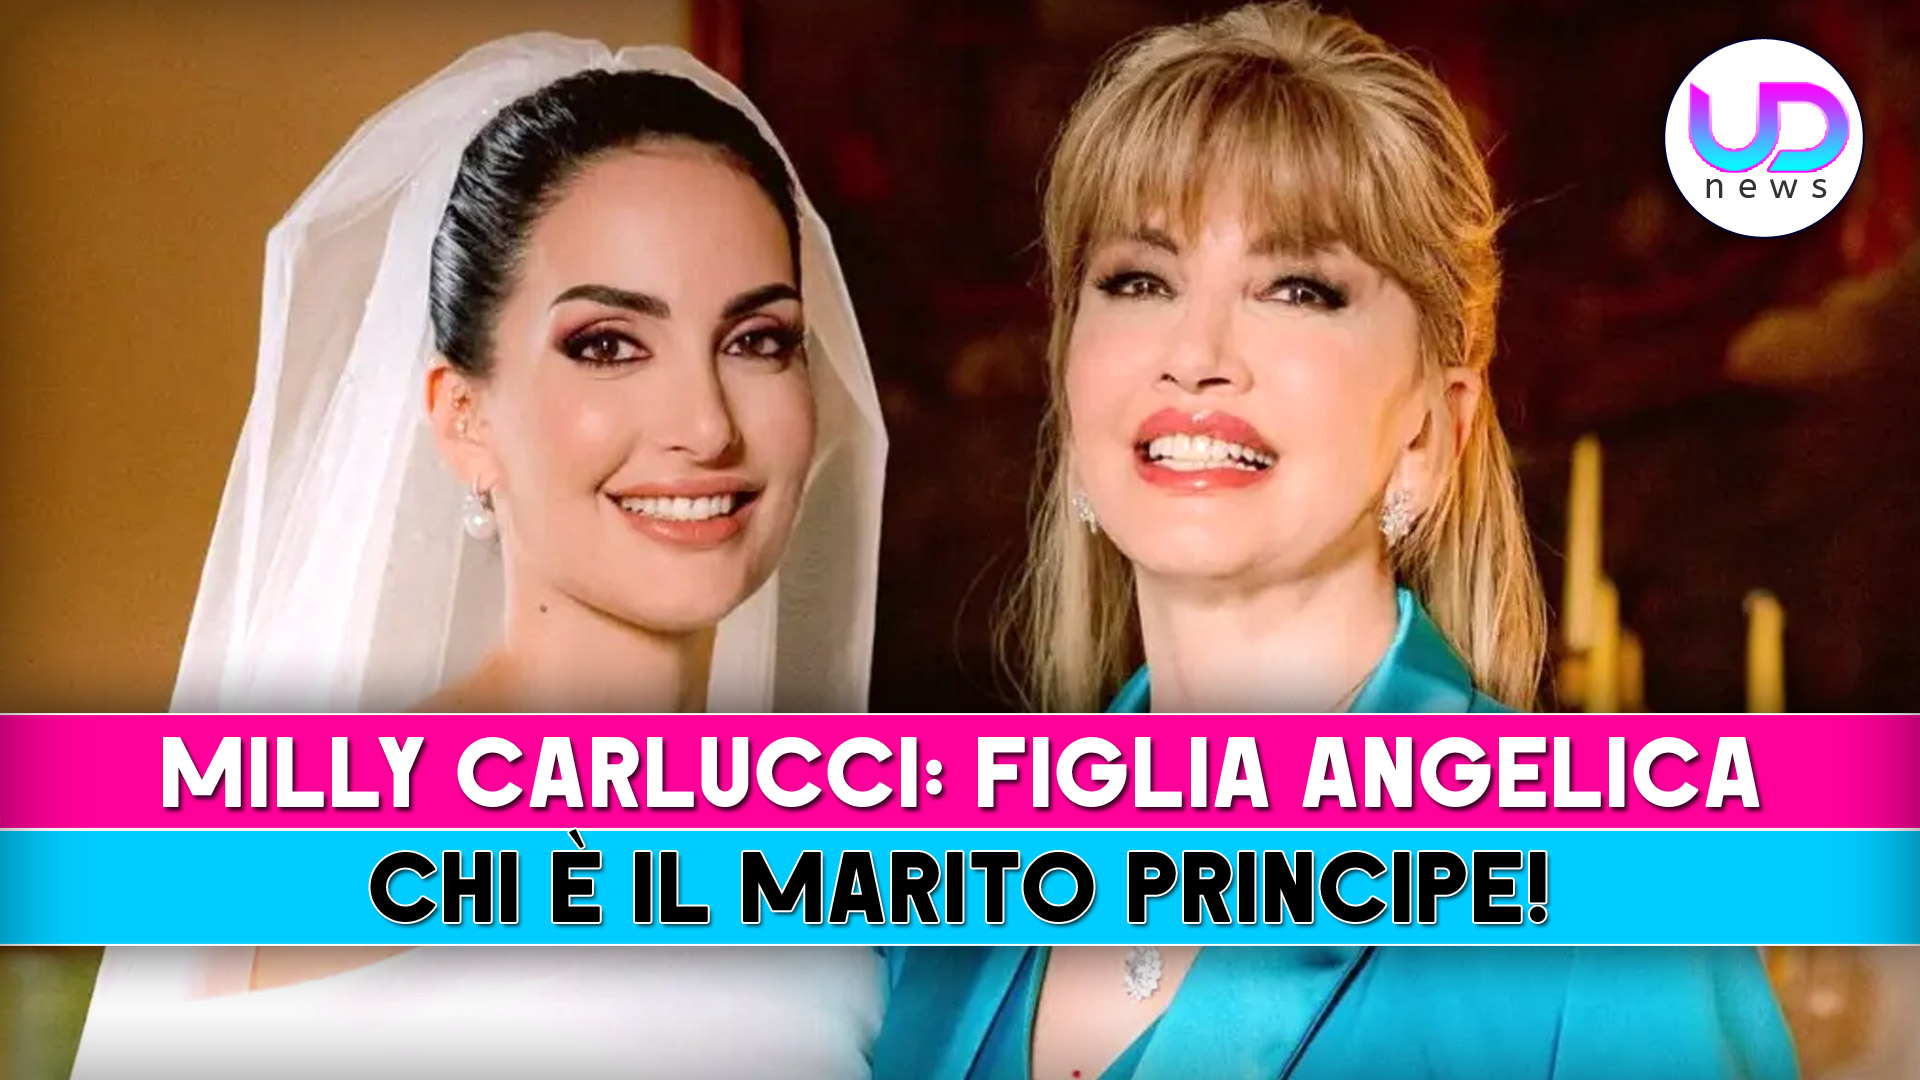 Milly Carlucci, La Figlia Angelica: Chi E’ Il Marito, Principe Ricco Di Una Famosa Dinastia!